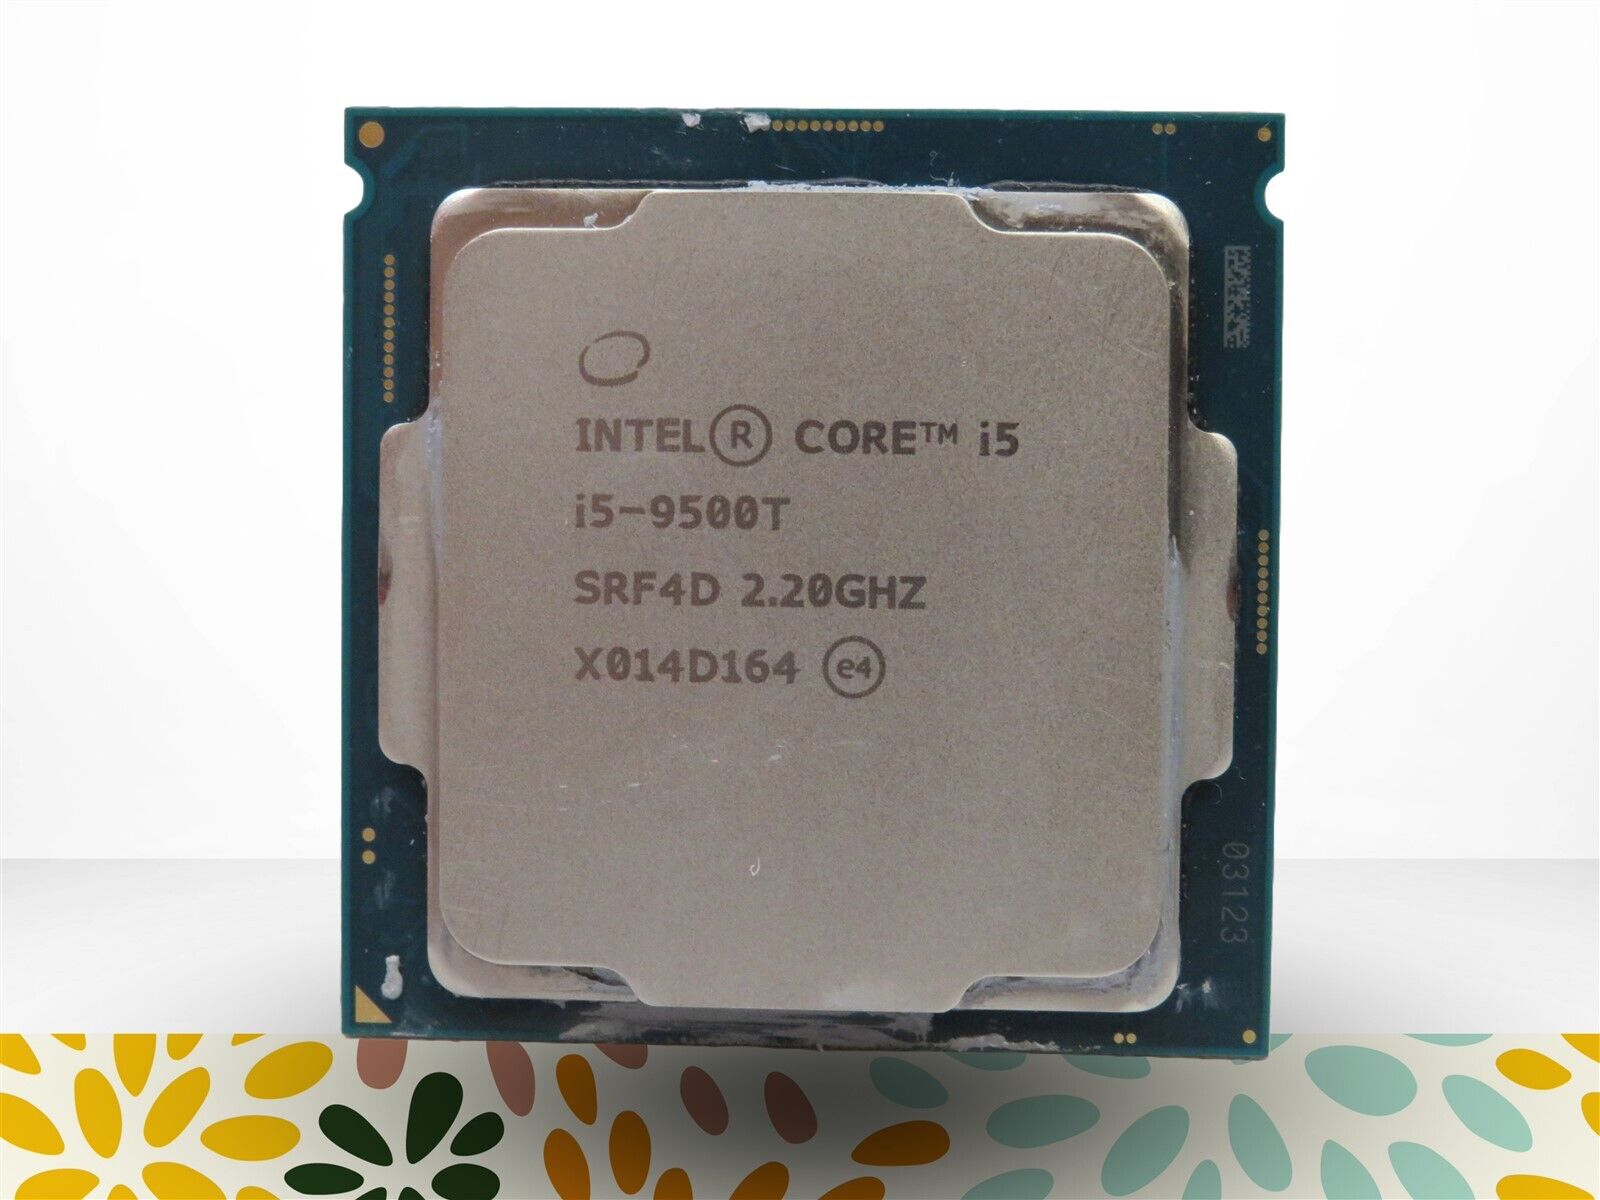 Intel Core i5-9500T 2.20Ghz SRF4D 6-Core LGA1151 Socket CPU Processor